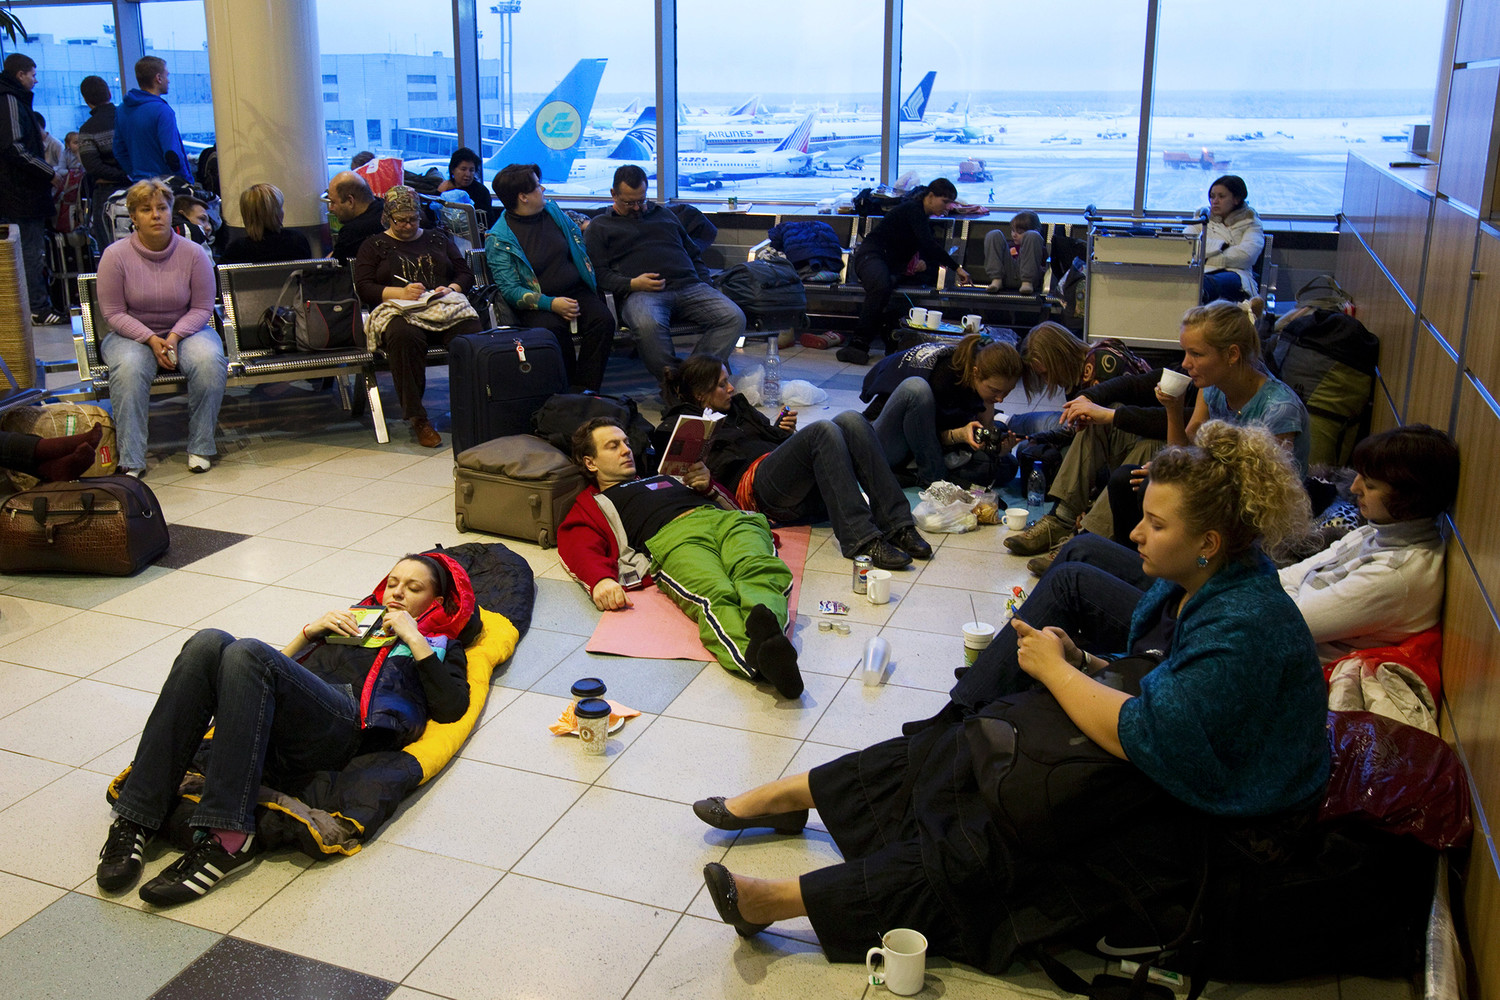 Какая сейчас обстановка в аэропорту. Ситуации в аэропорту. Пассажиры в аэропорту. Люди в зале ожидания. Люди спят в аэропорту.